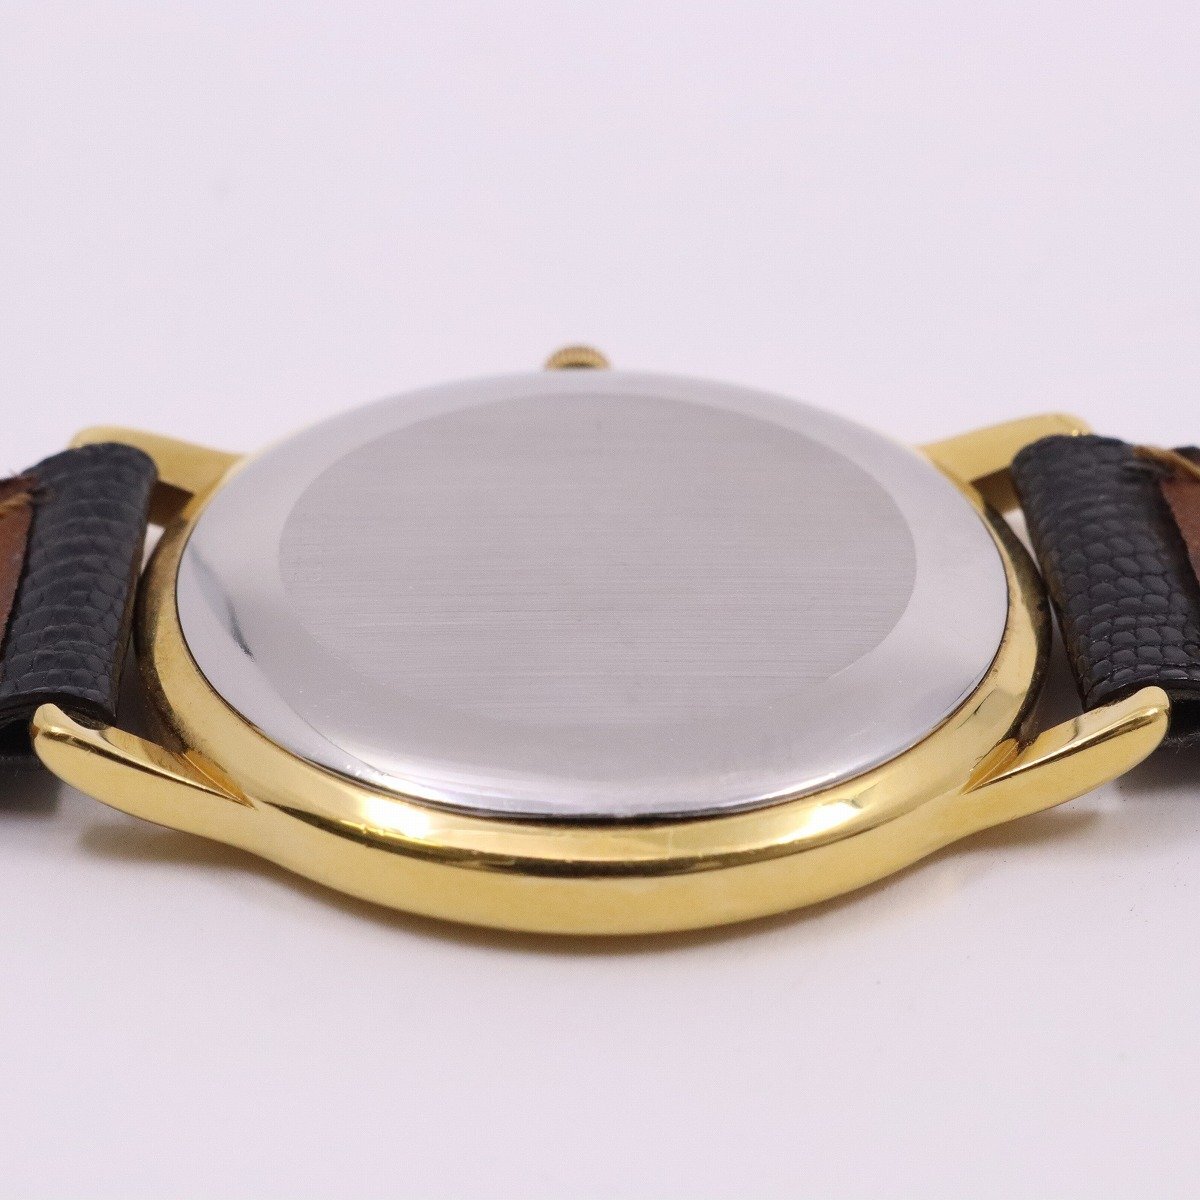 ETERNA Eterna кварц мужские наручные часы Gold GP белый циферблат оригинальный кожа ремень 2000.22[... ломбард ]